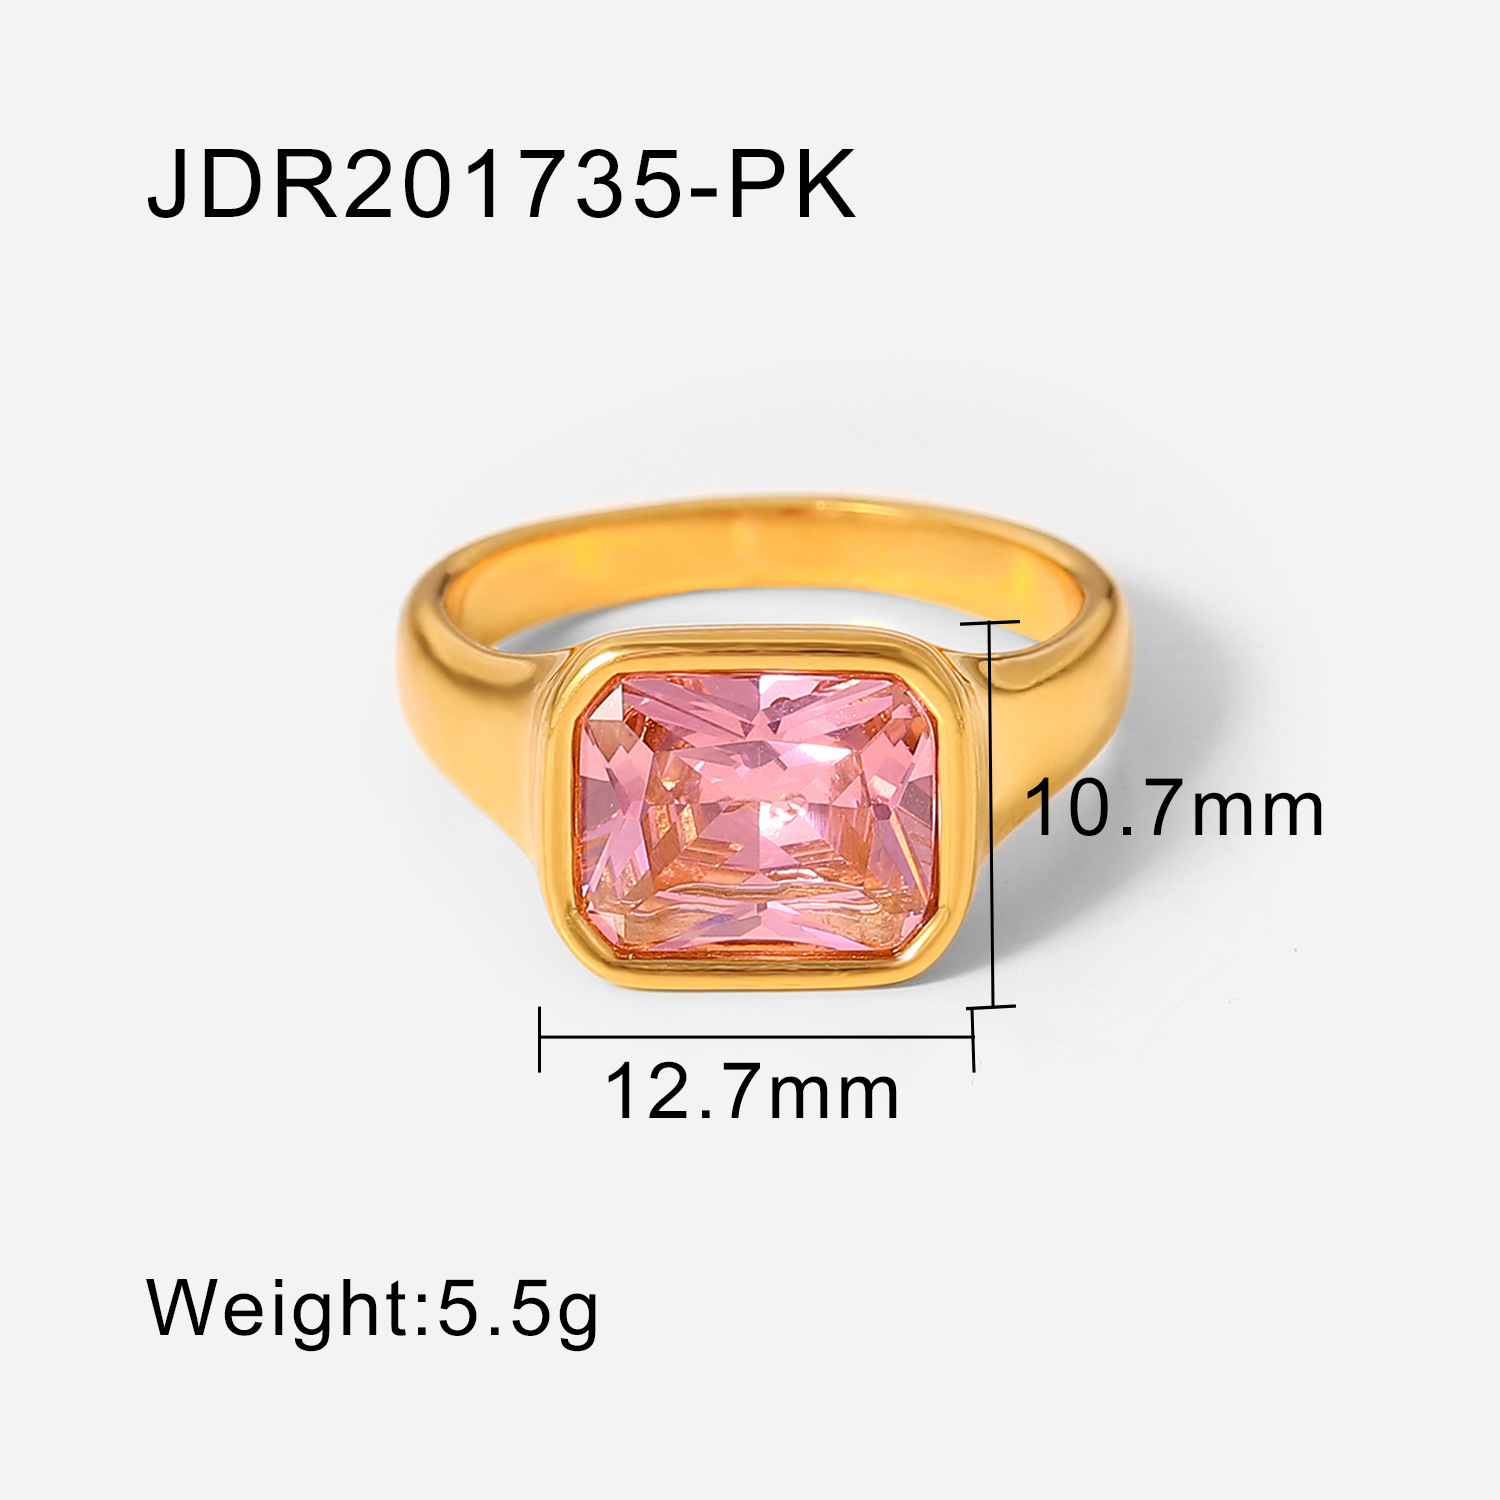 2:JDR201735-PK